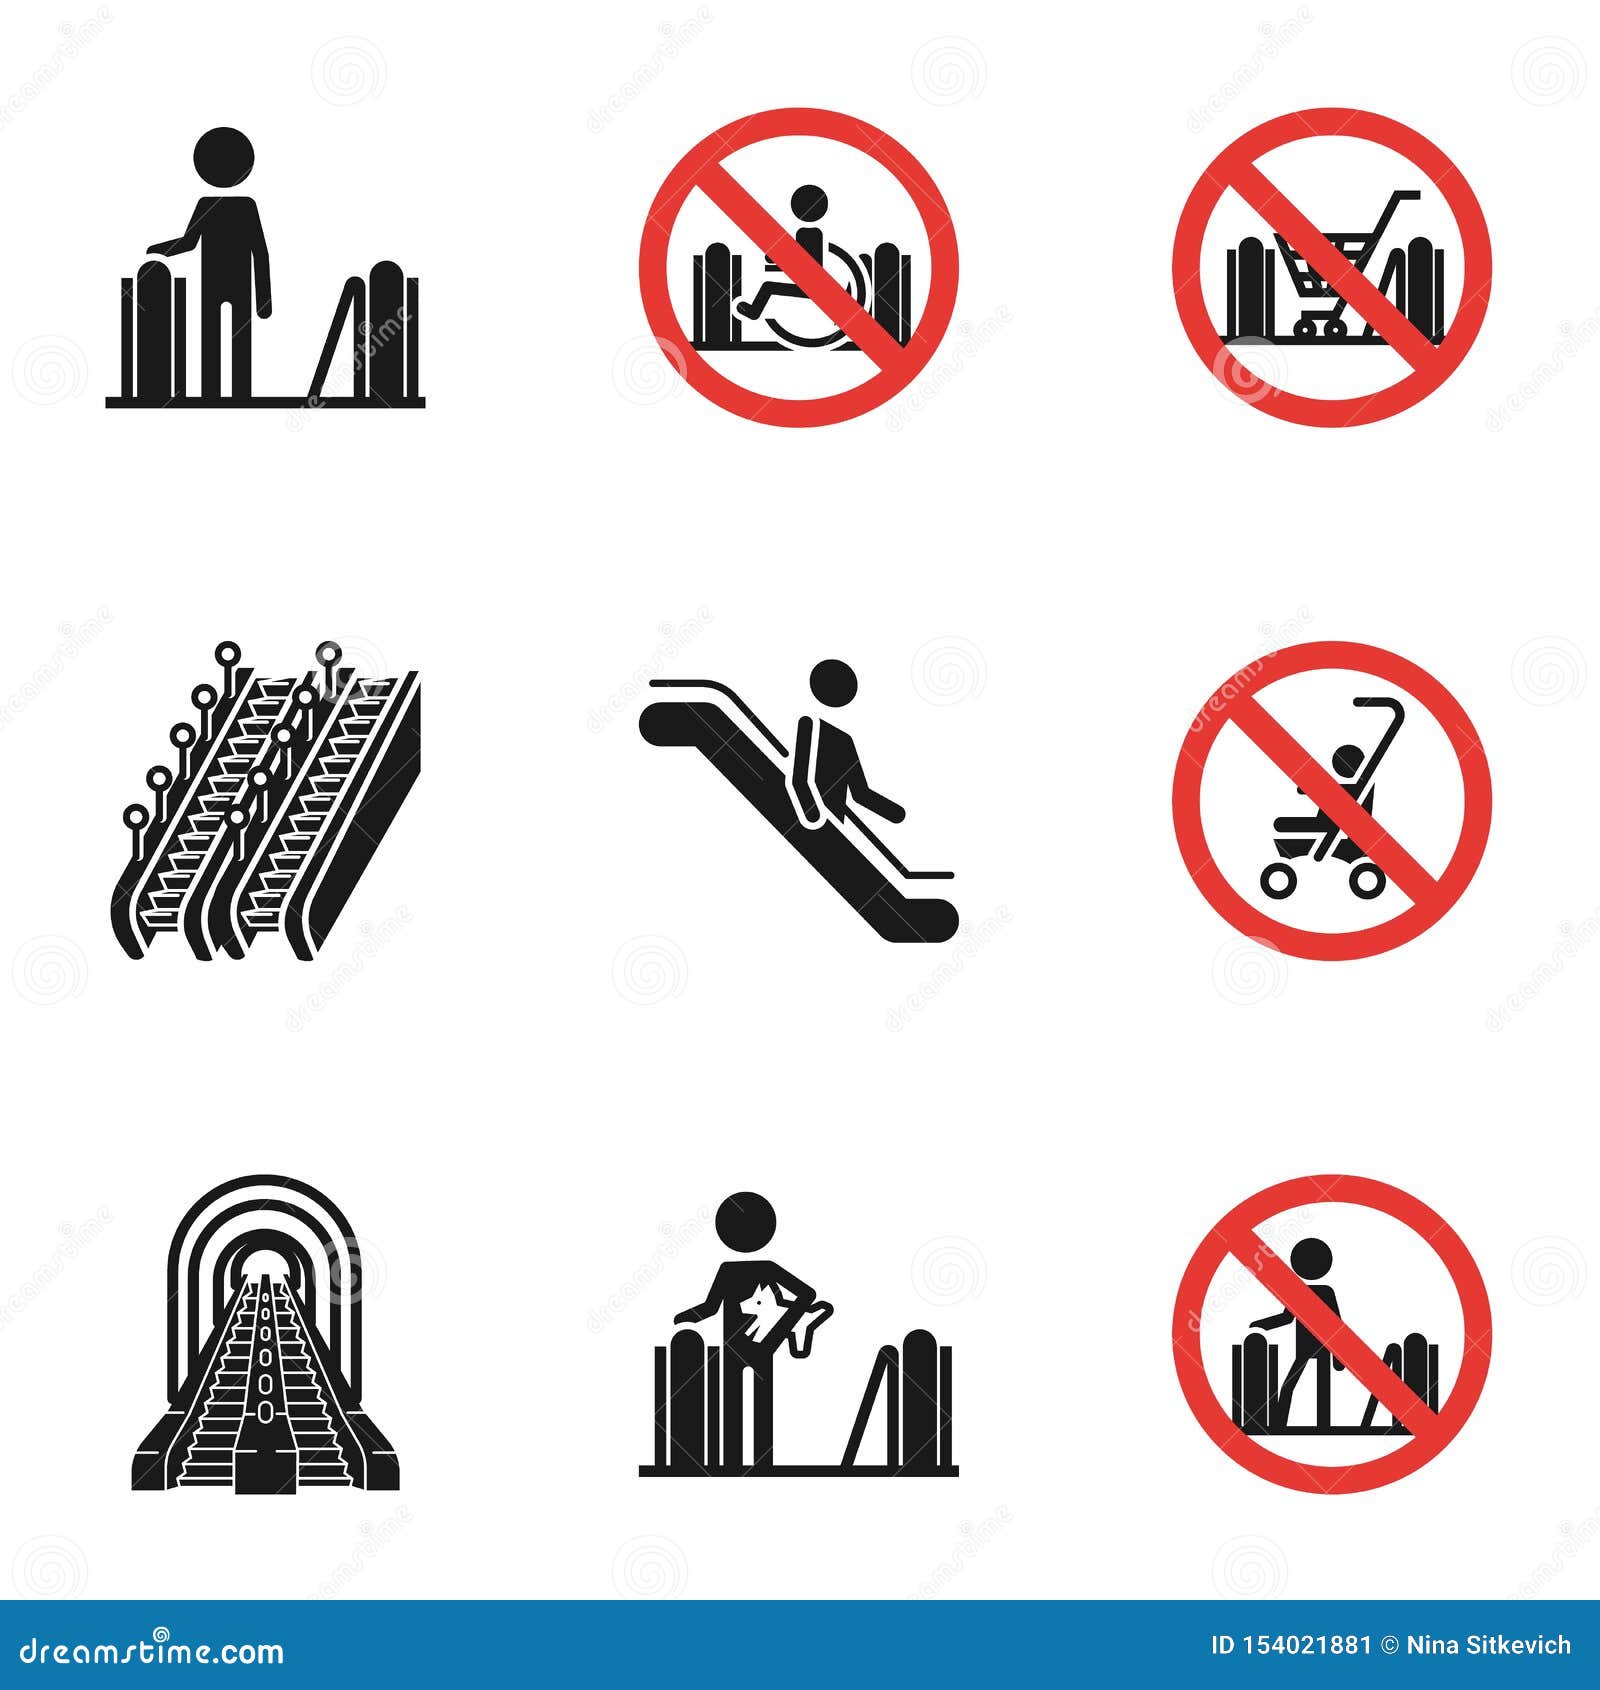 Правила безопасности на эскалаторе. Знаки безопасности на эскалаторе. Знак поведения на эскалаторе. Наклейки на эскалатор. Запрещающие знаки на эскалаторе.